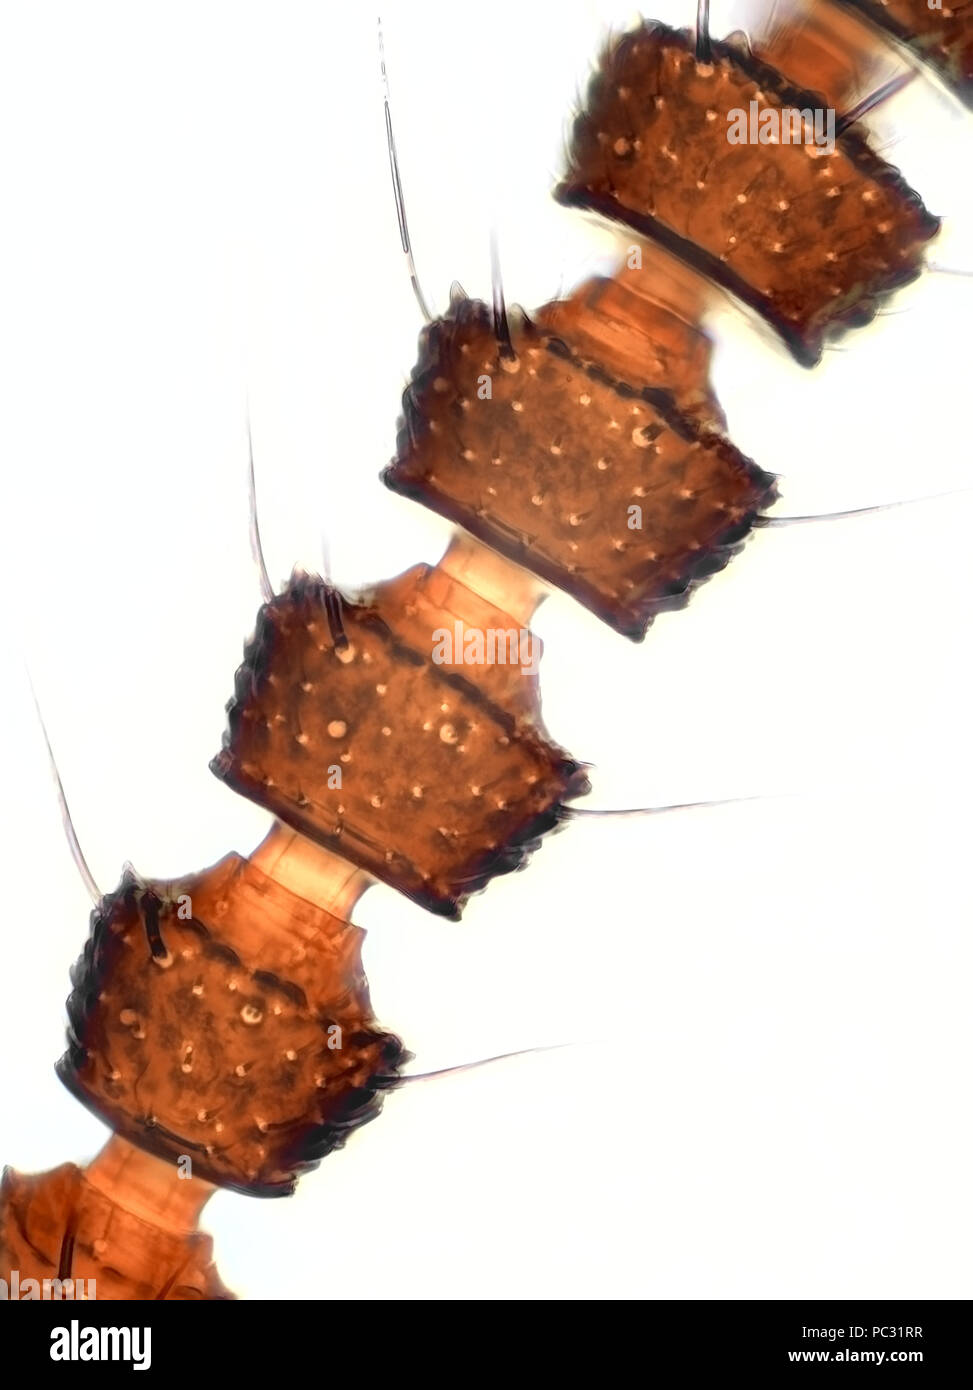 Microphotographie lumière d'un tout petit staphylin (Staphylinidae), l'antenne sur la photo est d'environ 240 micromètres de hauteur Banque D'Images